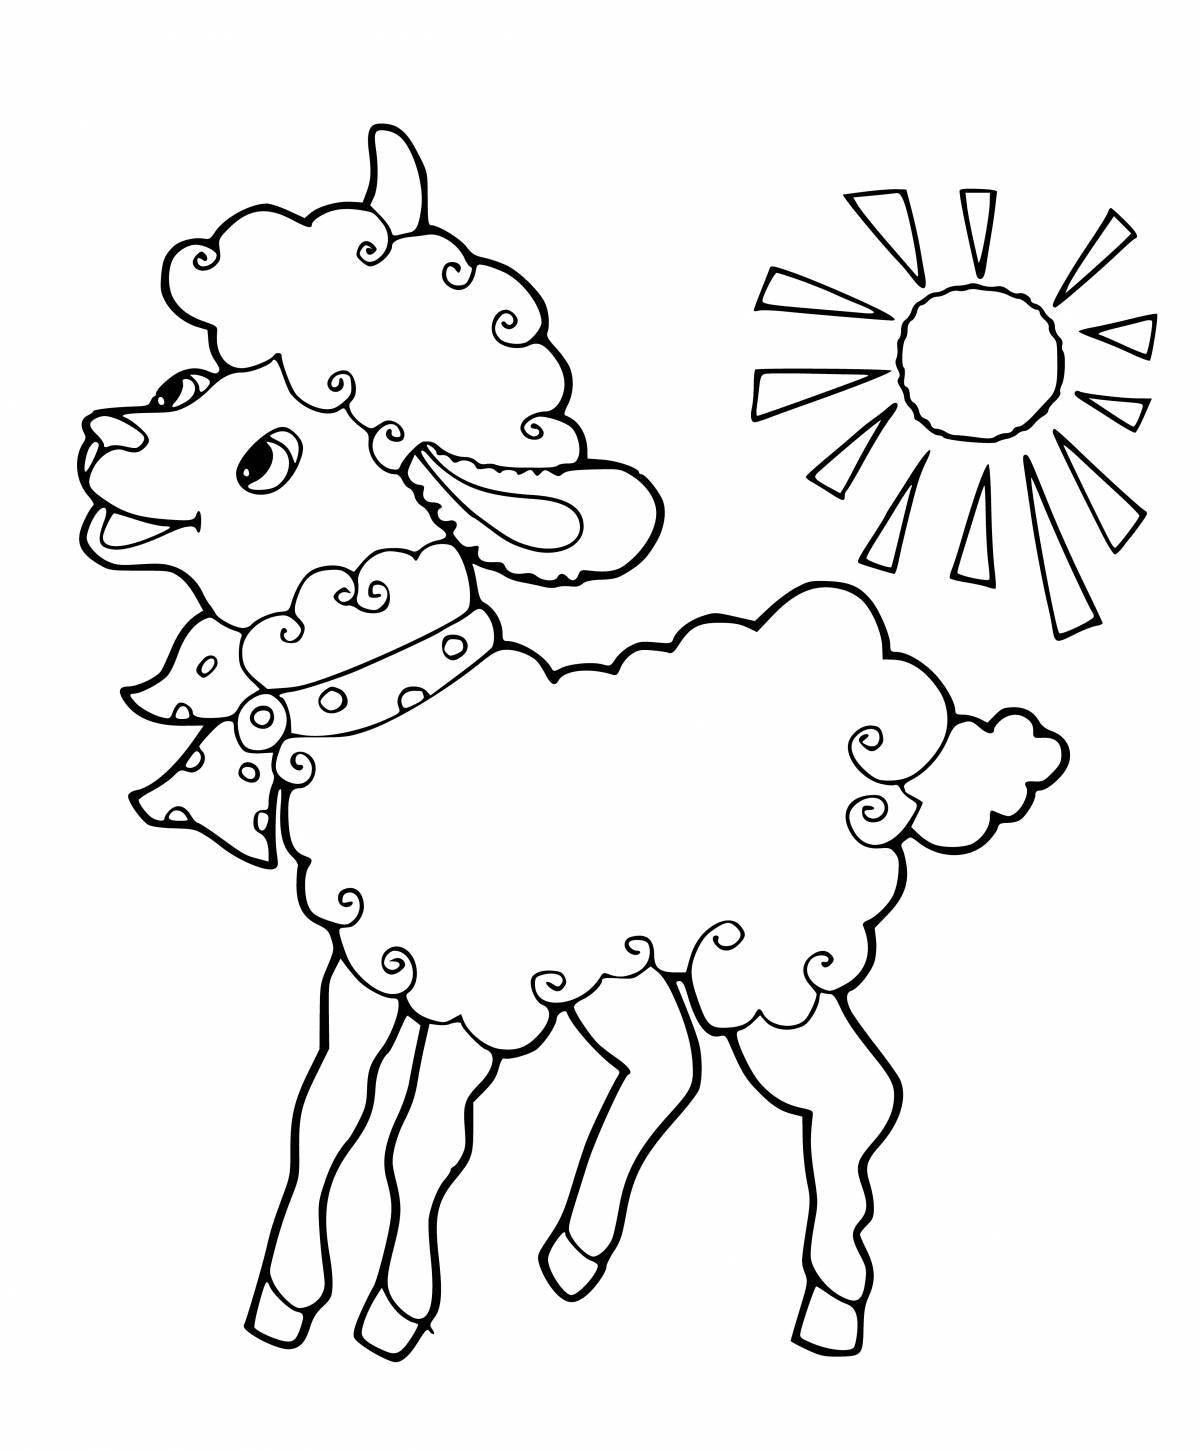 Великолепная раскраска овечка для детей